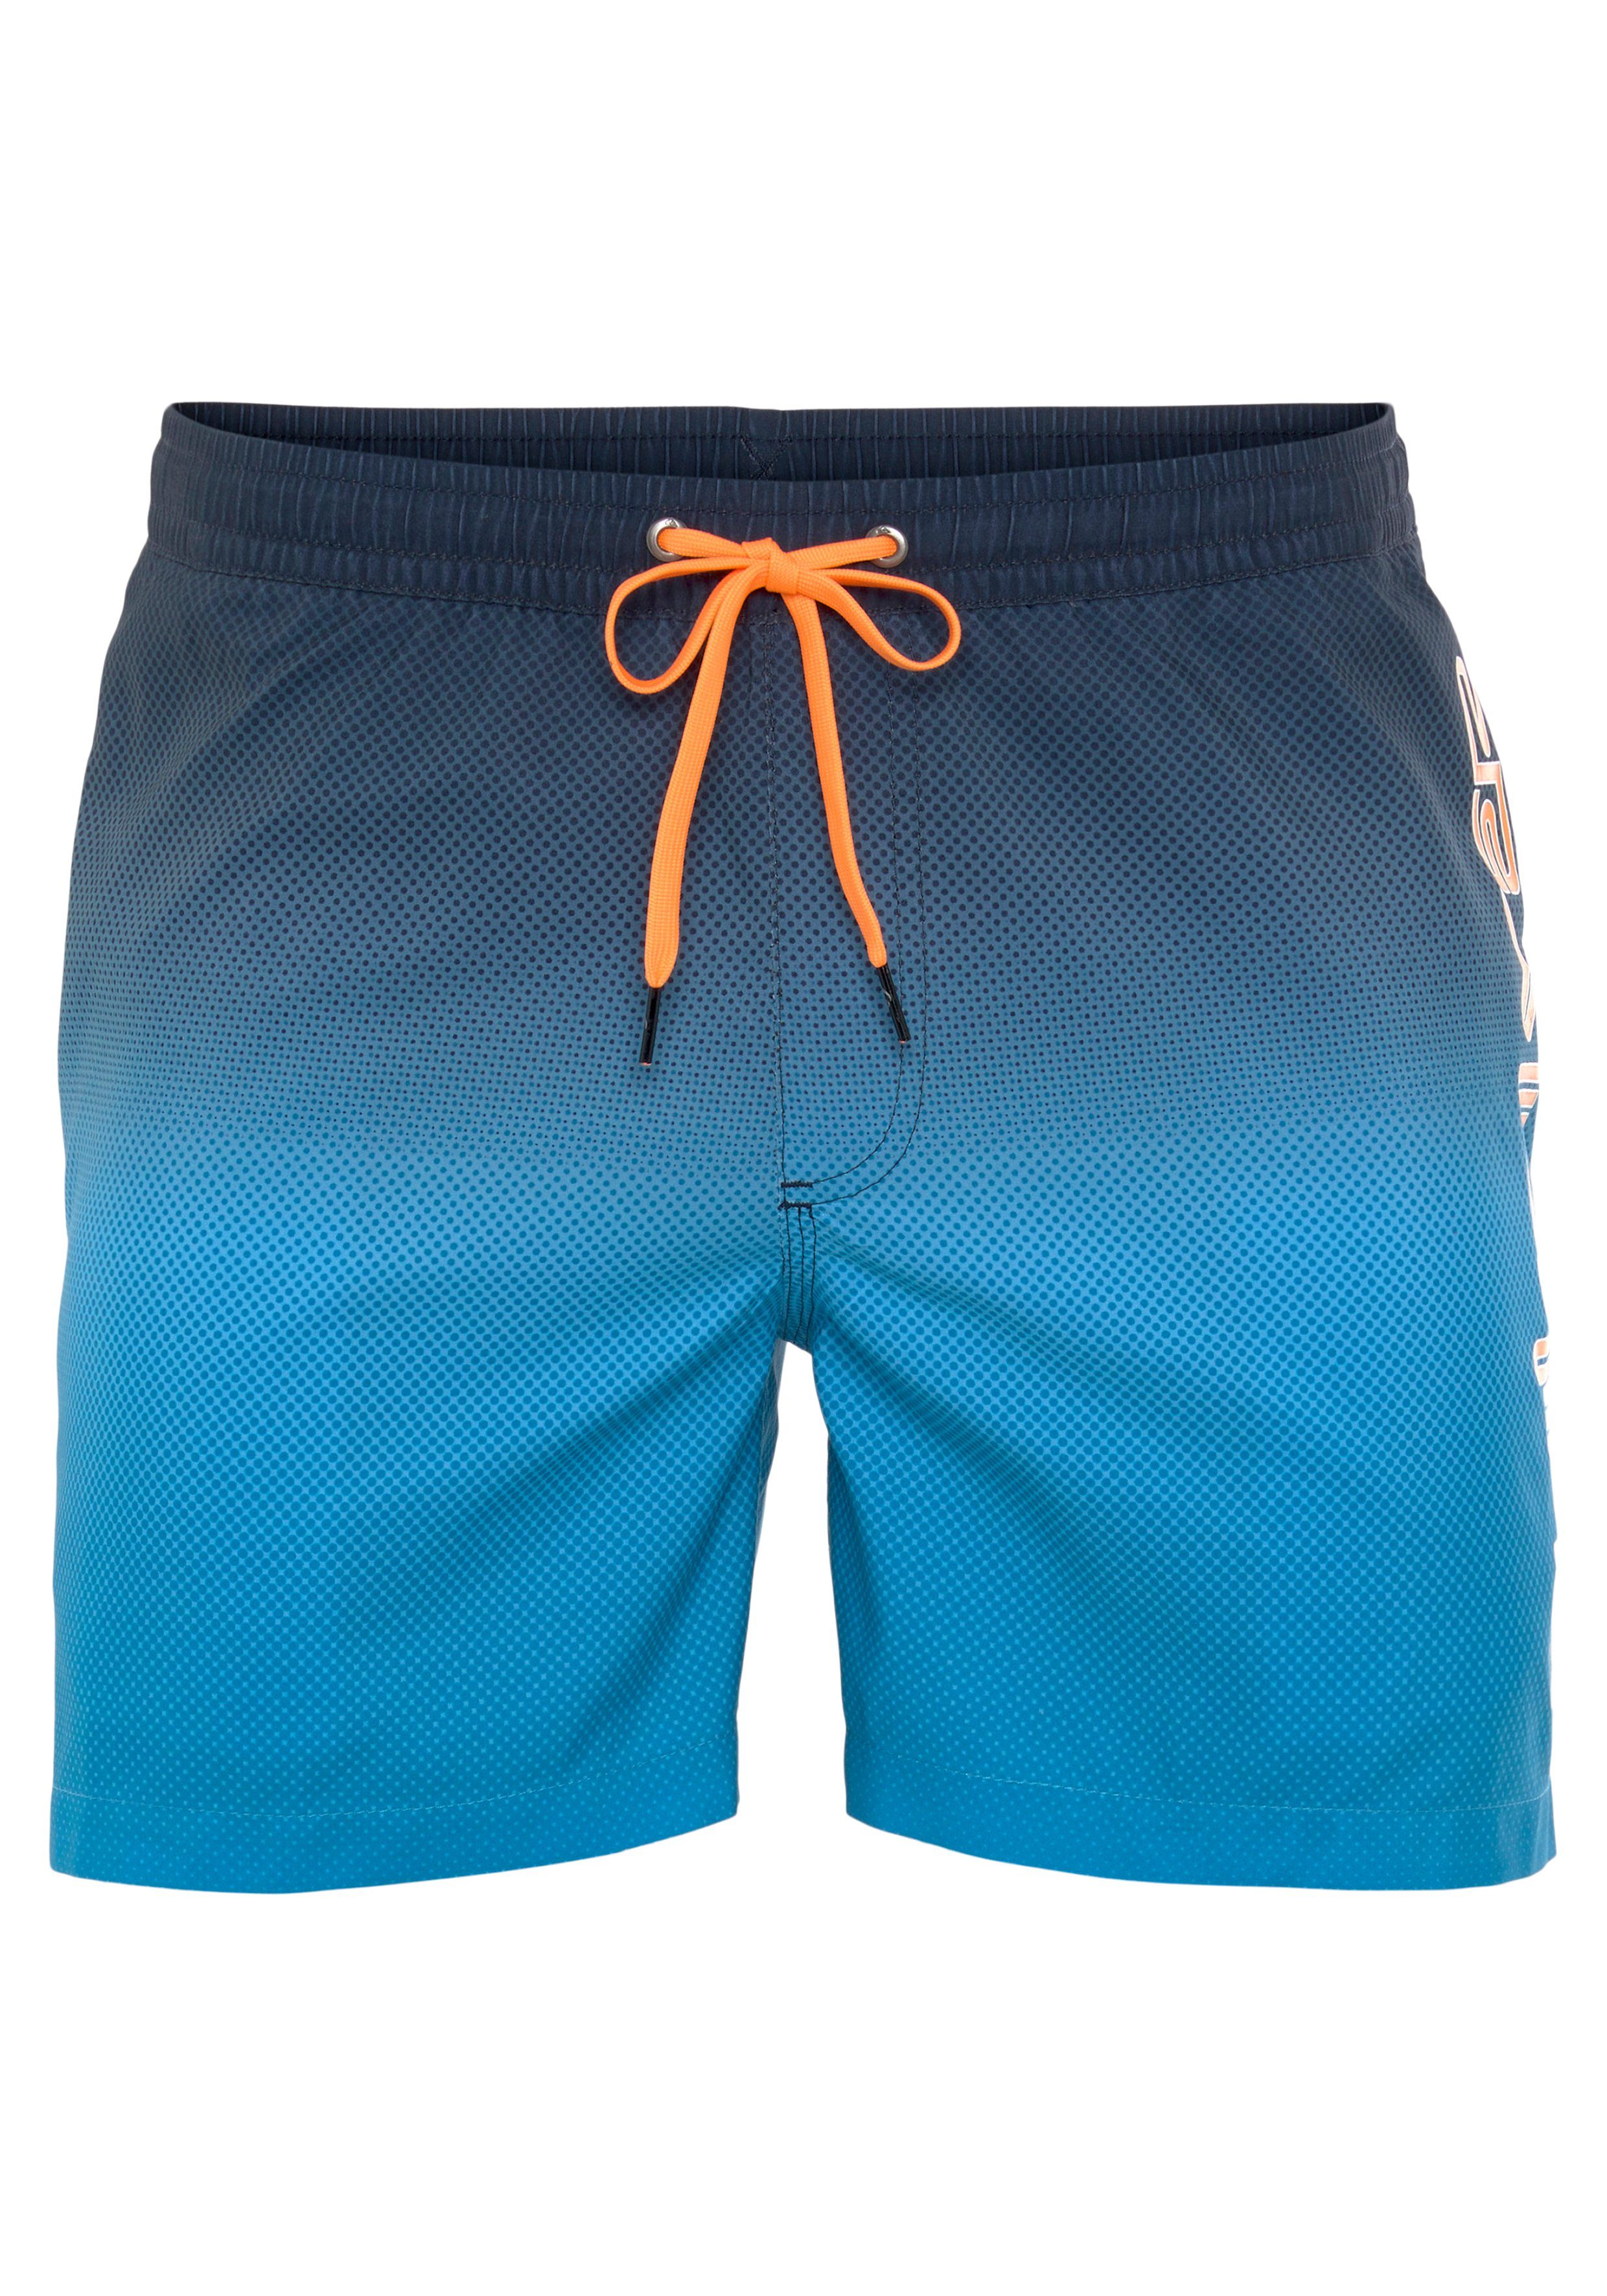 Shorts Badeshorts Quiksilver Herren blau-schwarz Beach Shorts Swim